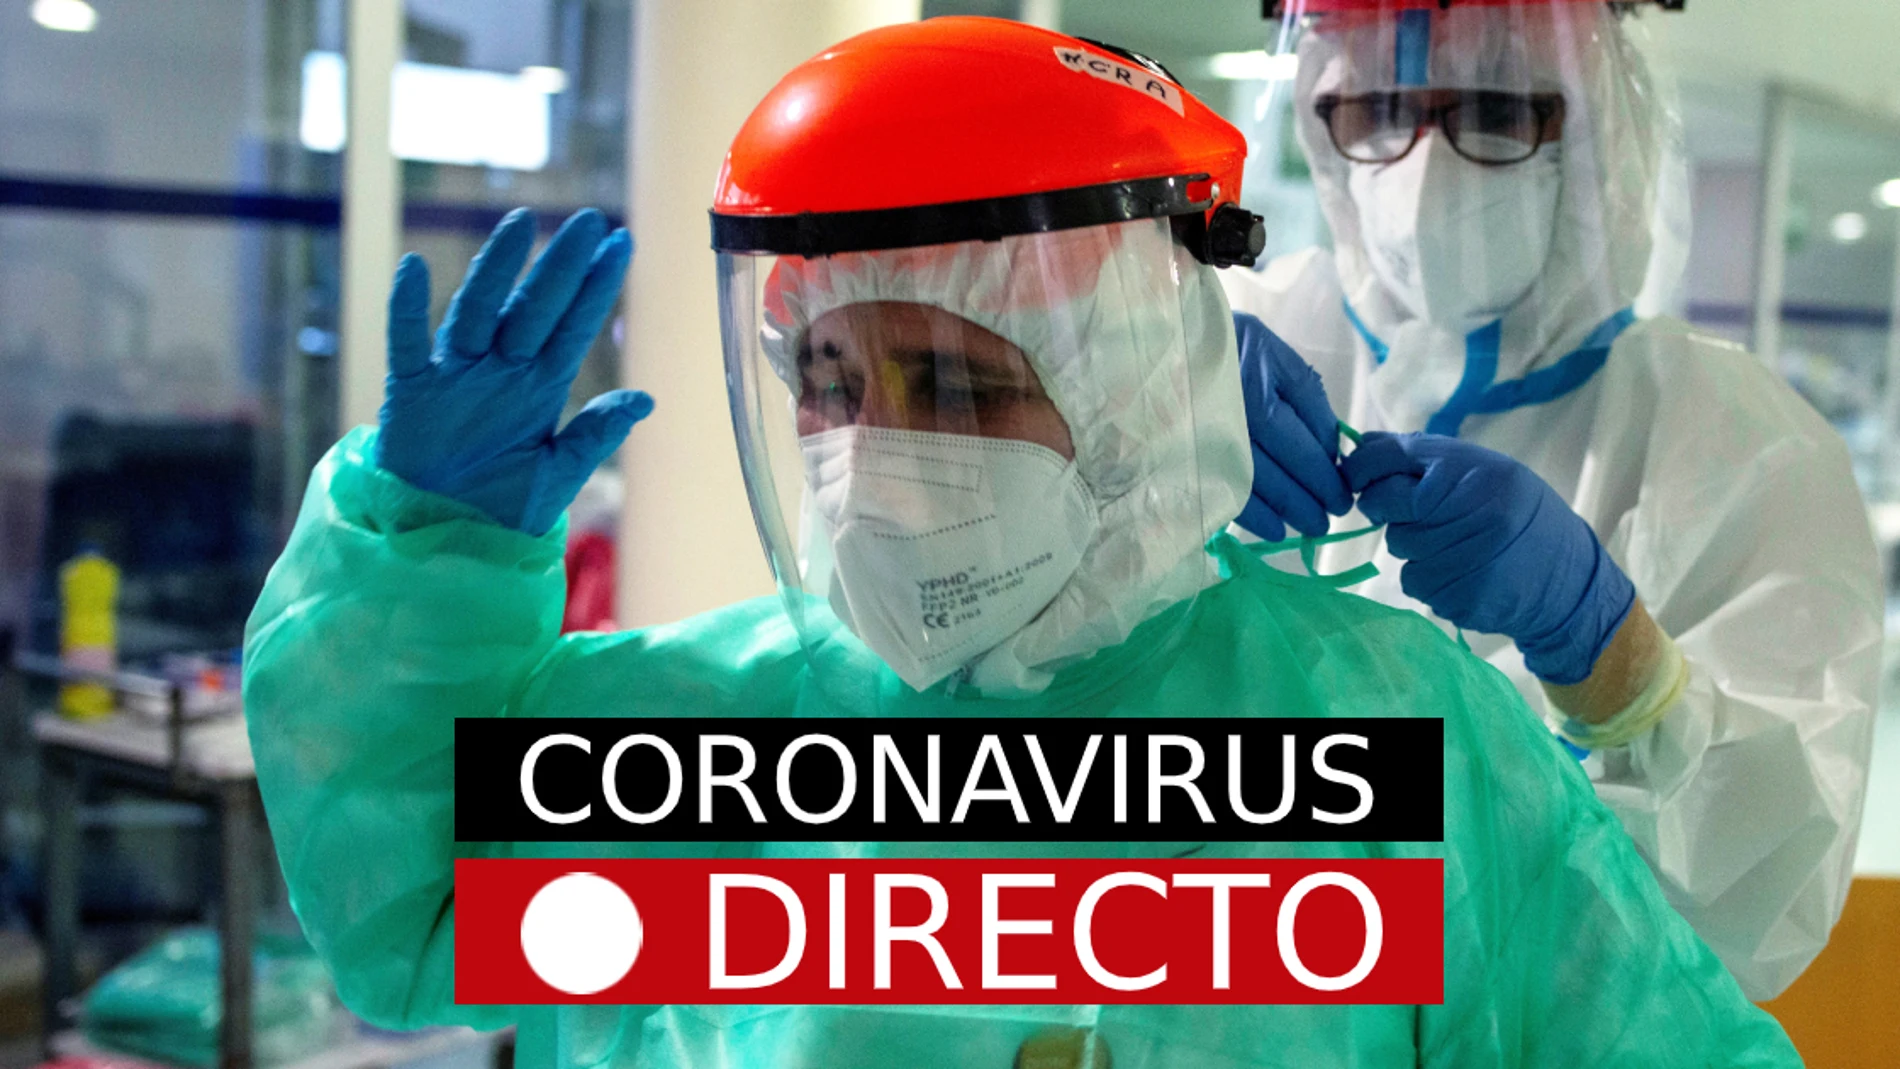 COVID-19, hoy | Medidas, confinamientos perimetral por coronavirus en España y nuevas restricciones, en directo